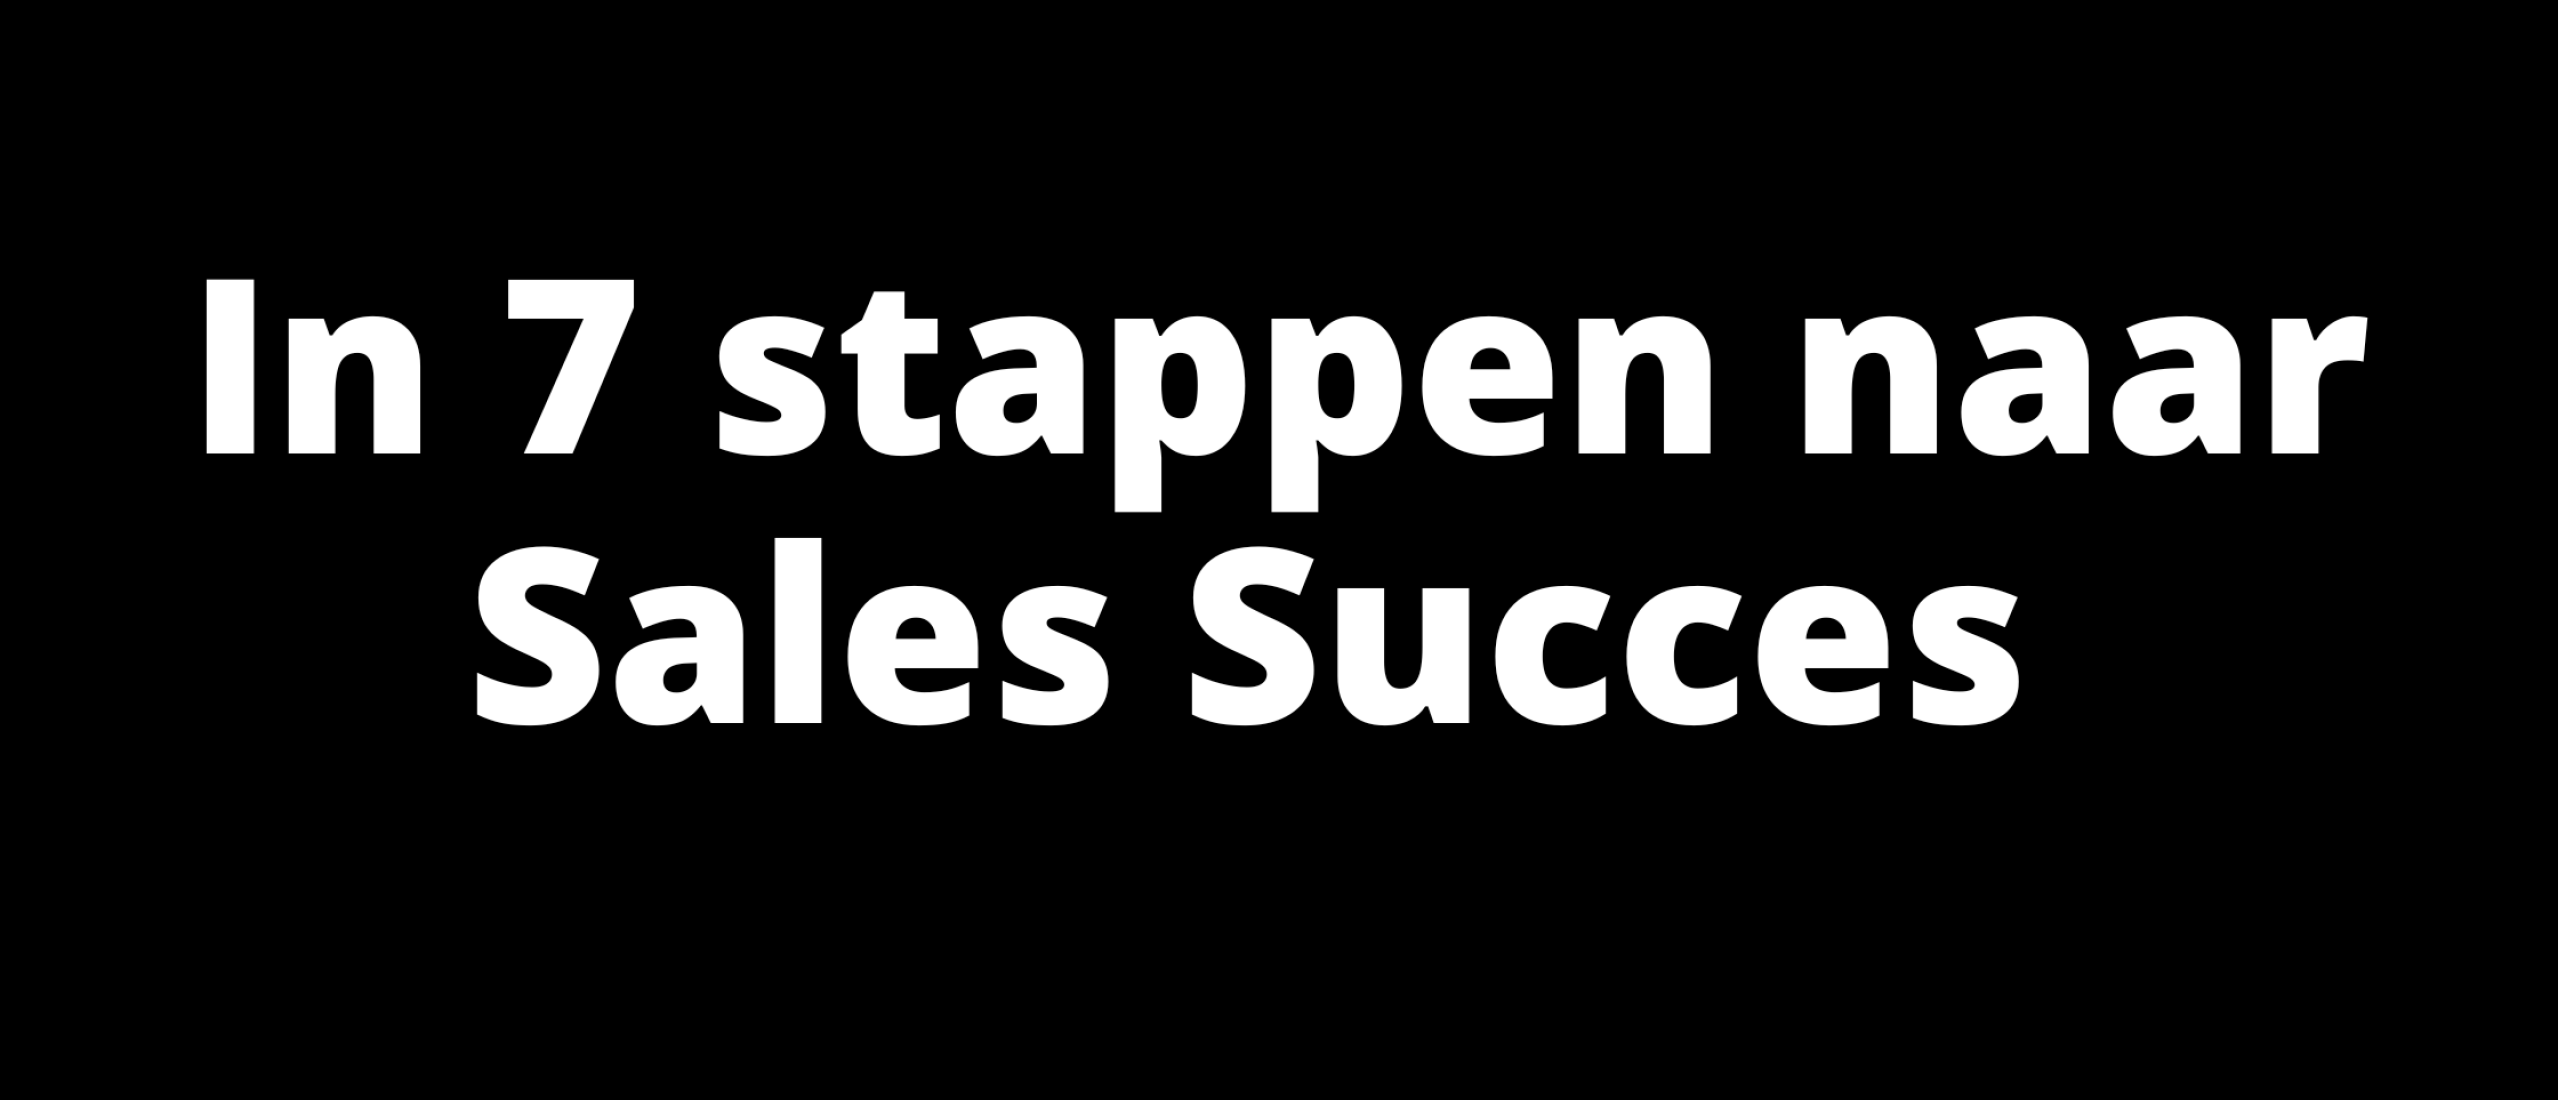 In 7 stappen naar Sales Succes